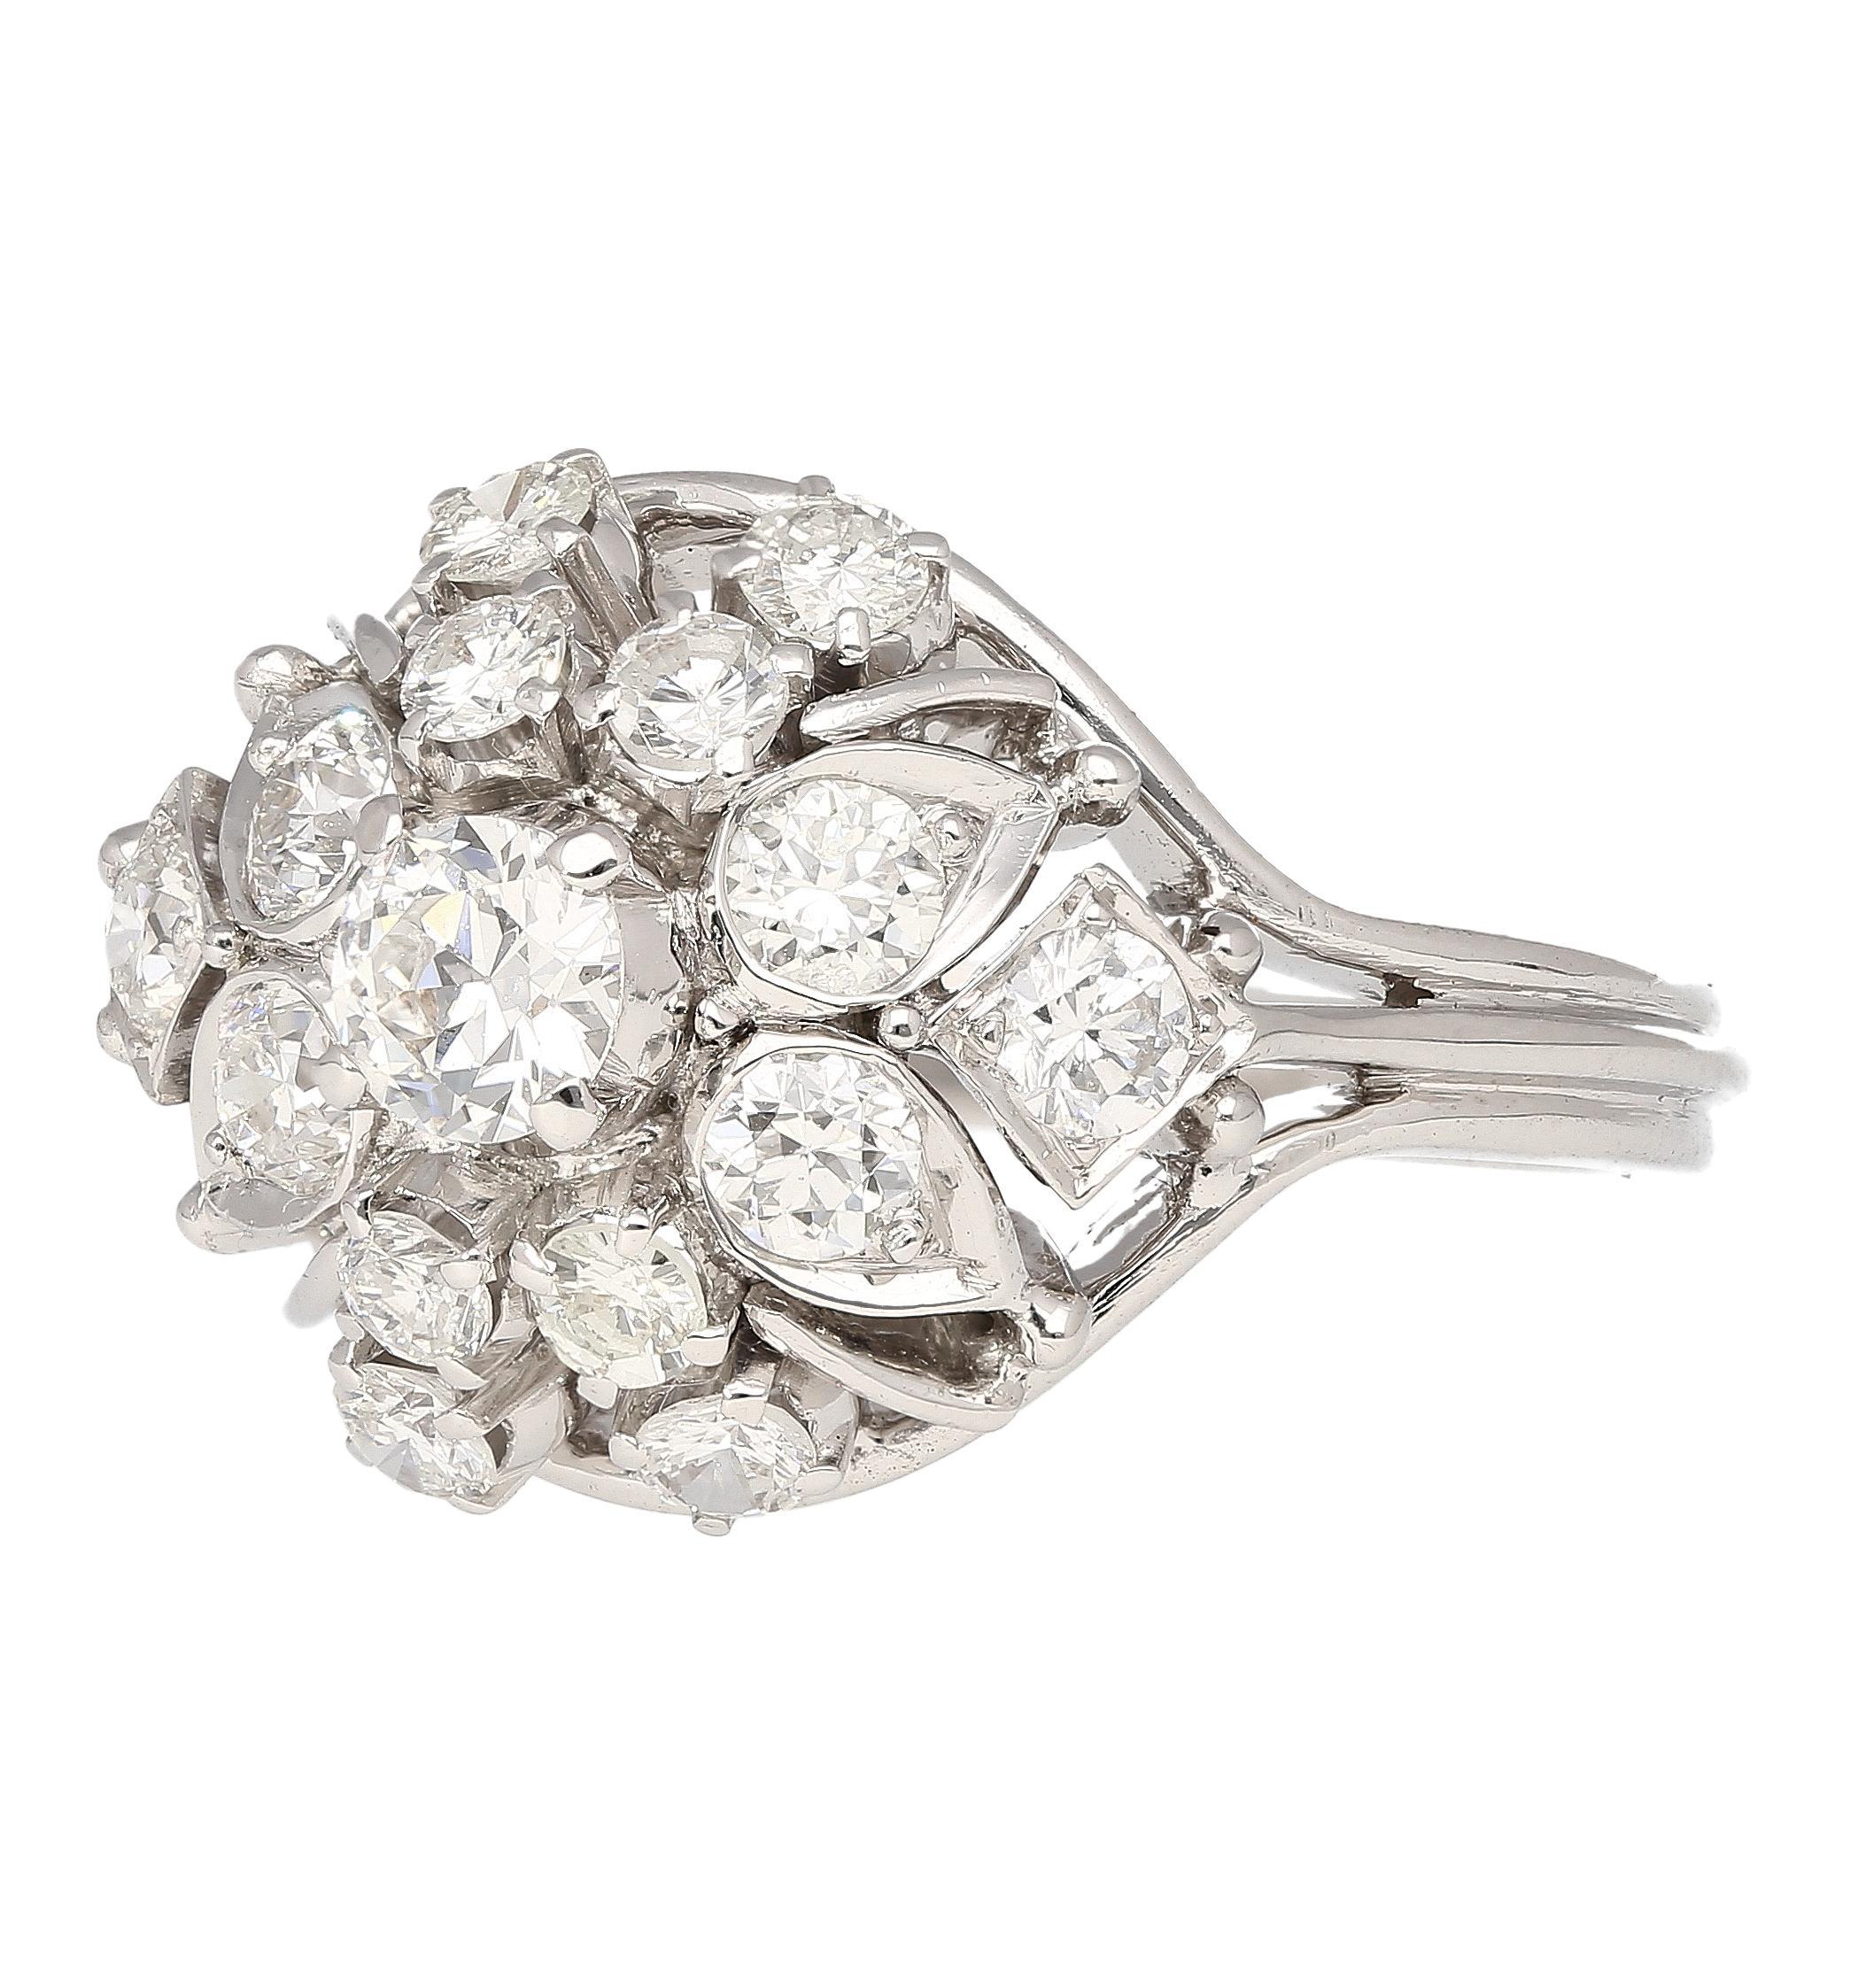 Dieser bezaubernde Ring verbindet Vintage-Charme mit modernem Glitzern. Ein faszinierender Diamant von 0,30 Karat im alten europäischen Schliff steht im Mittelpunkt. Der Mittelstein wird von einem absteigenden Halo aus 14 runden Diamanten von je 1